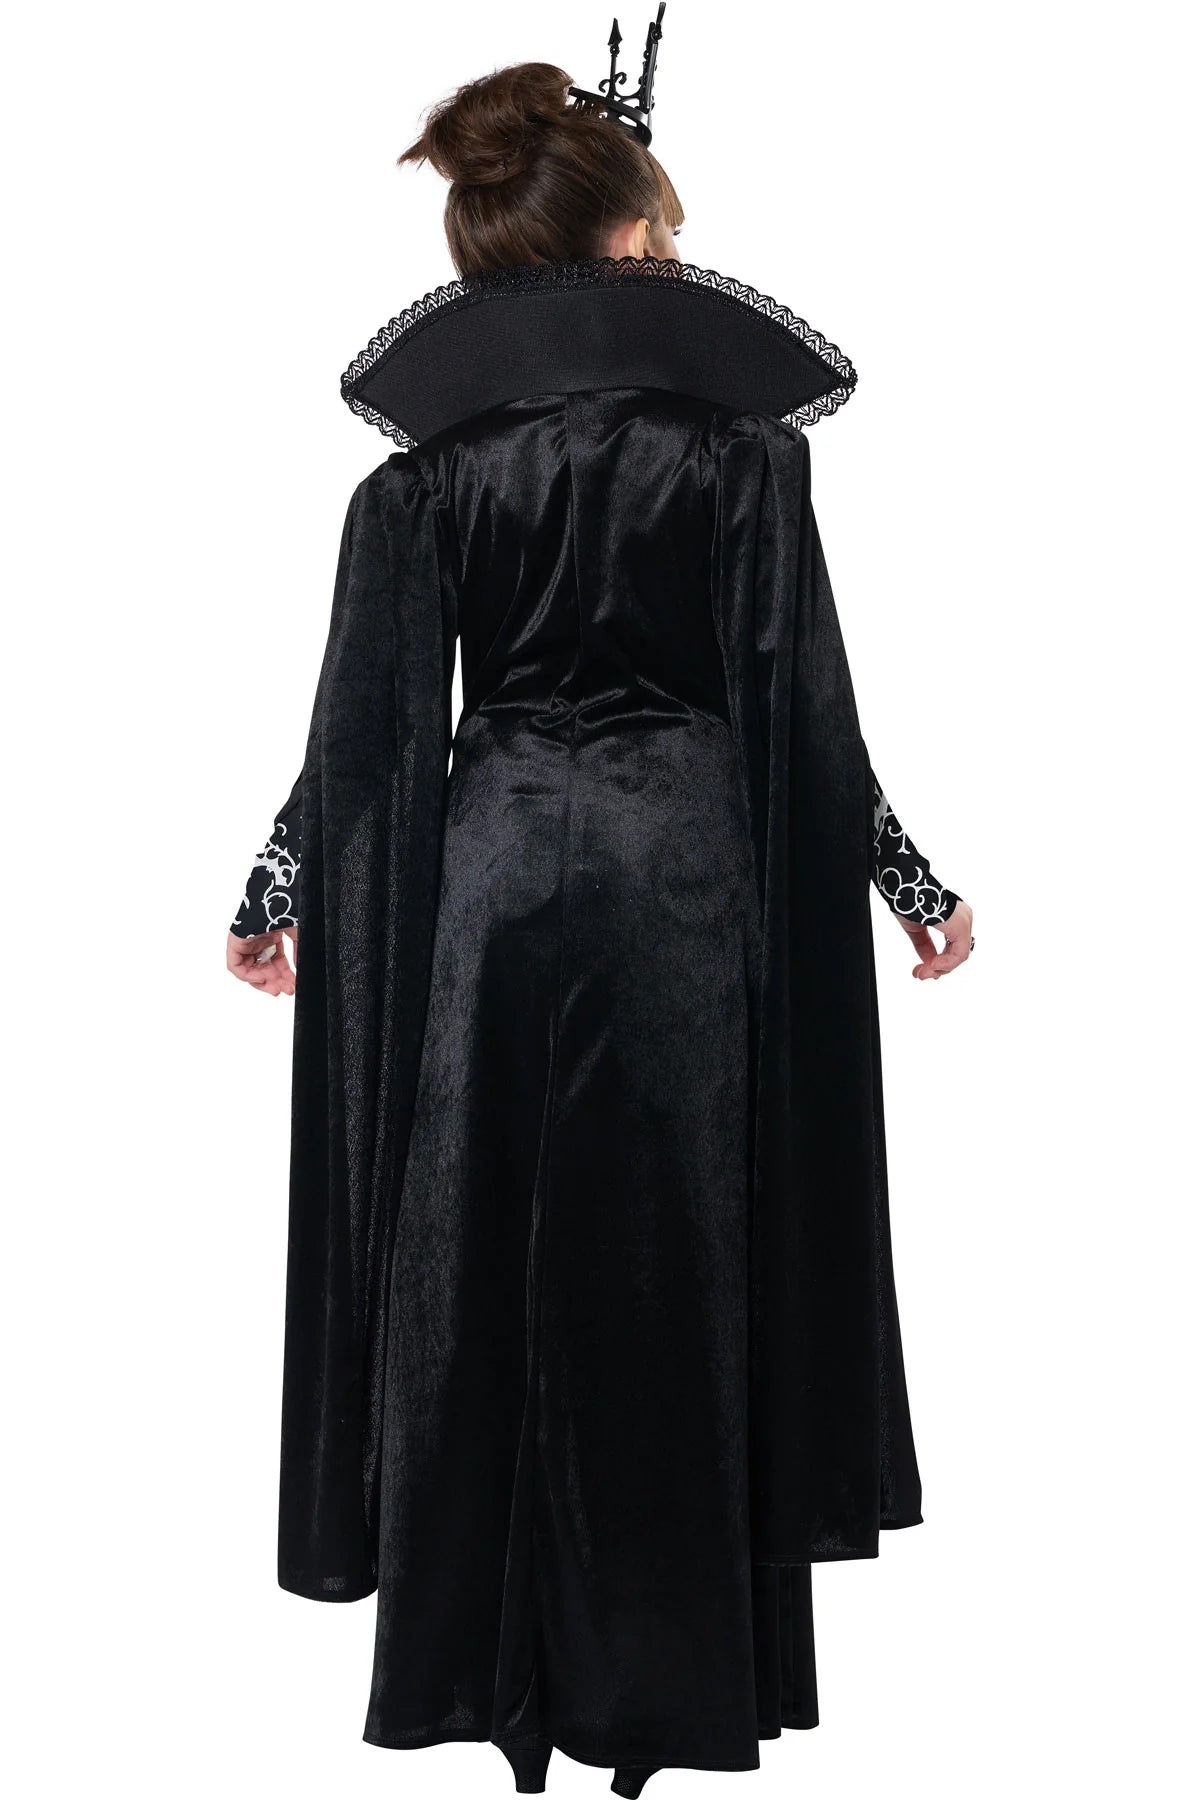 Vampire Queen Deluxe Costume - Child